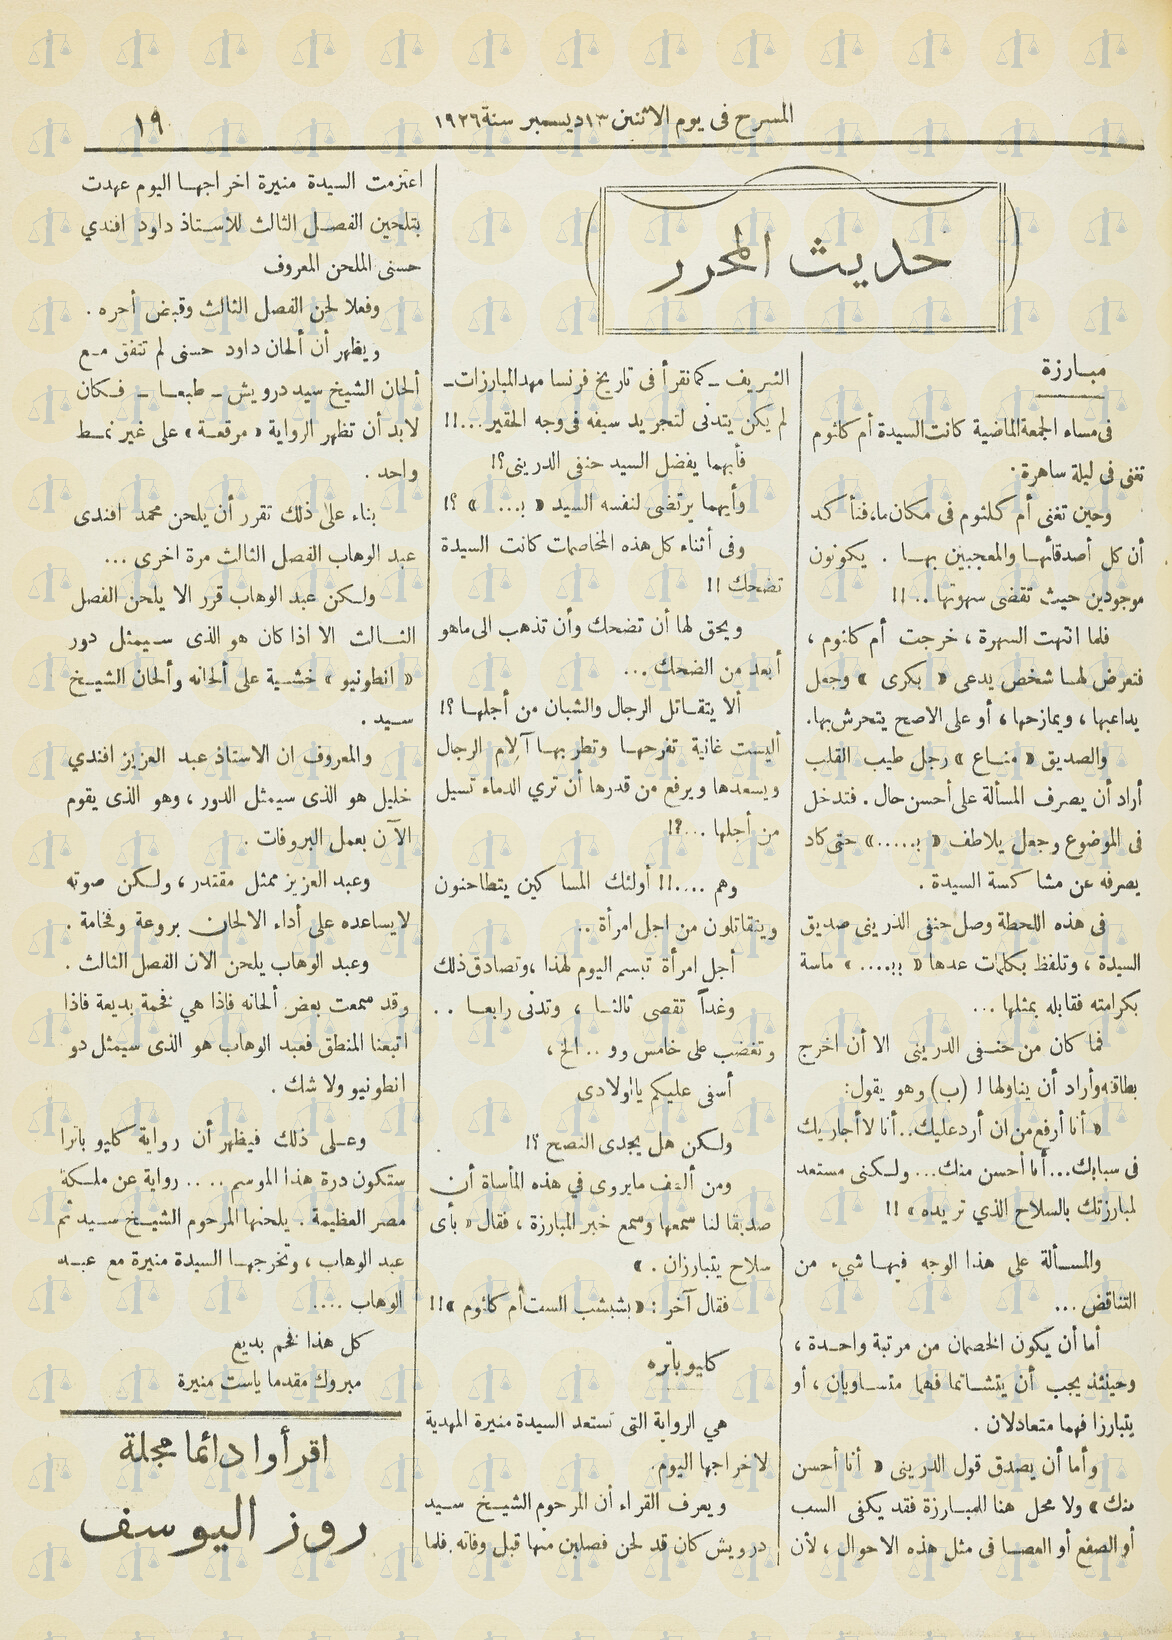 كلام مجلة المسرح عن استمتاع أم كلثوم بالمعاكسات، يوم 13 ديسمبر 1926م، ص19